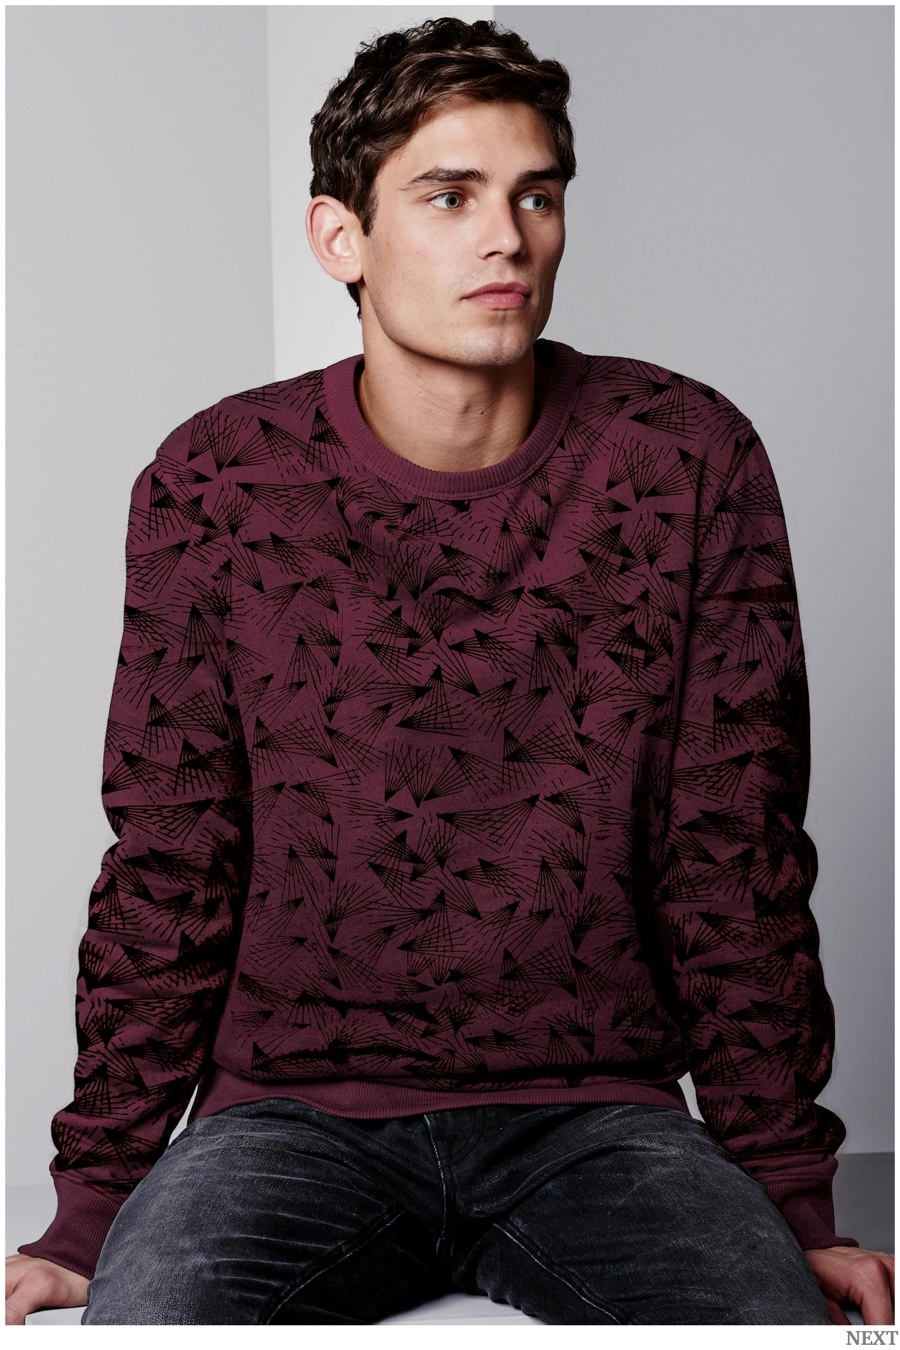 Graphic Focus: Next Knitwear + Trendy Sweatshirts